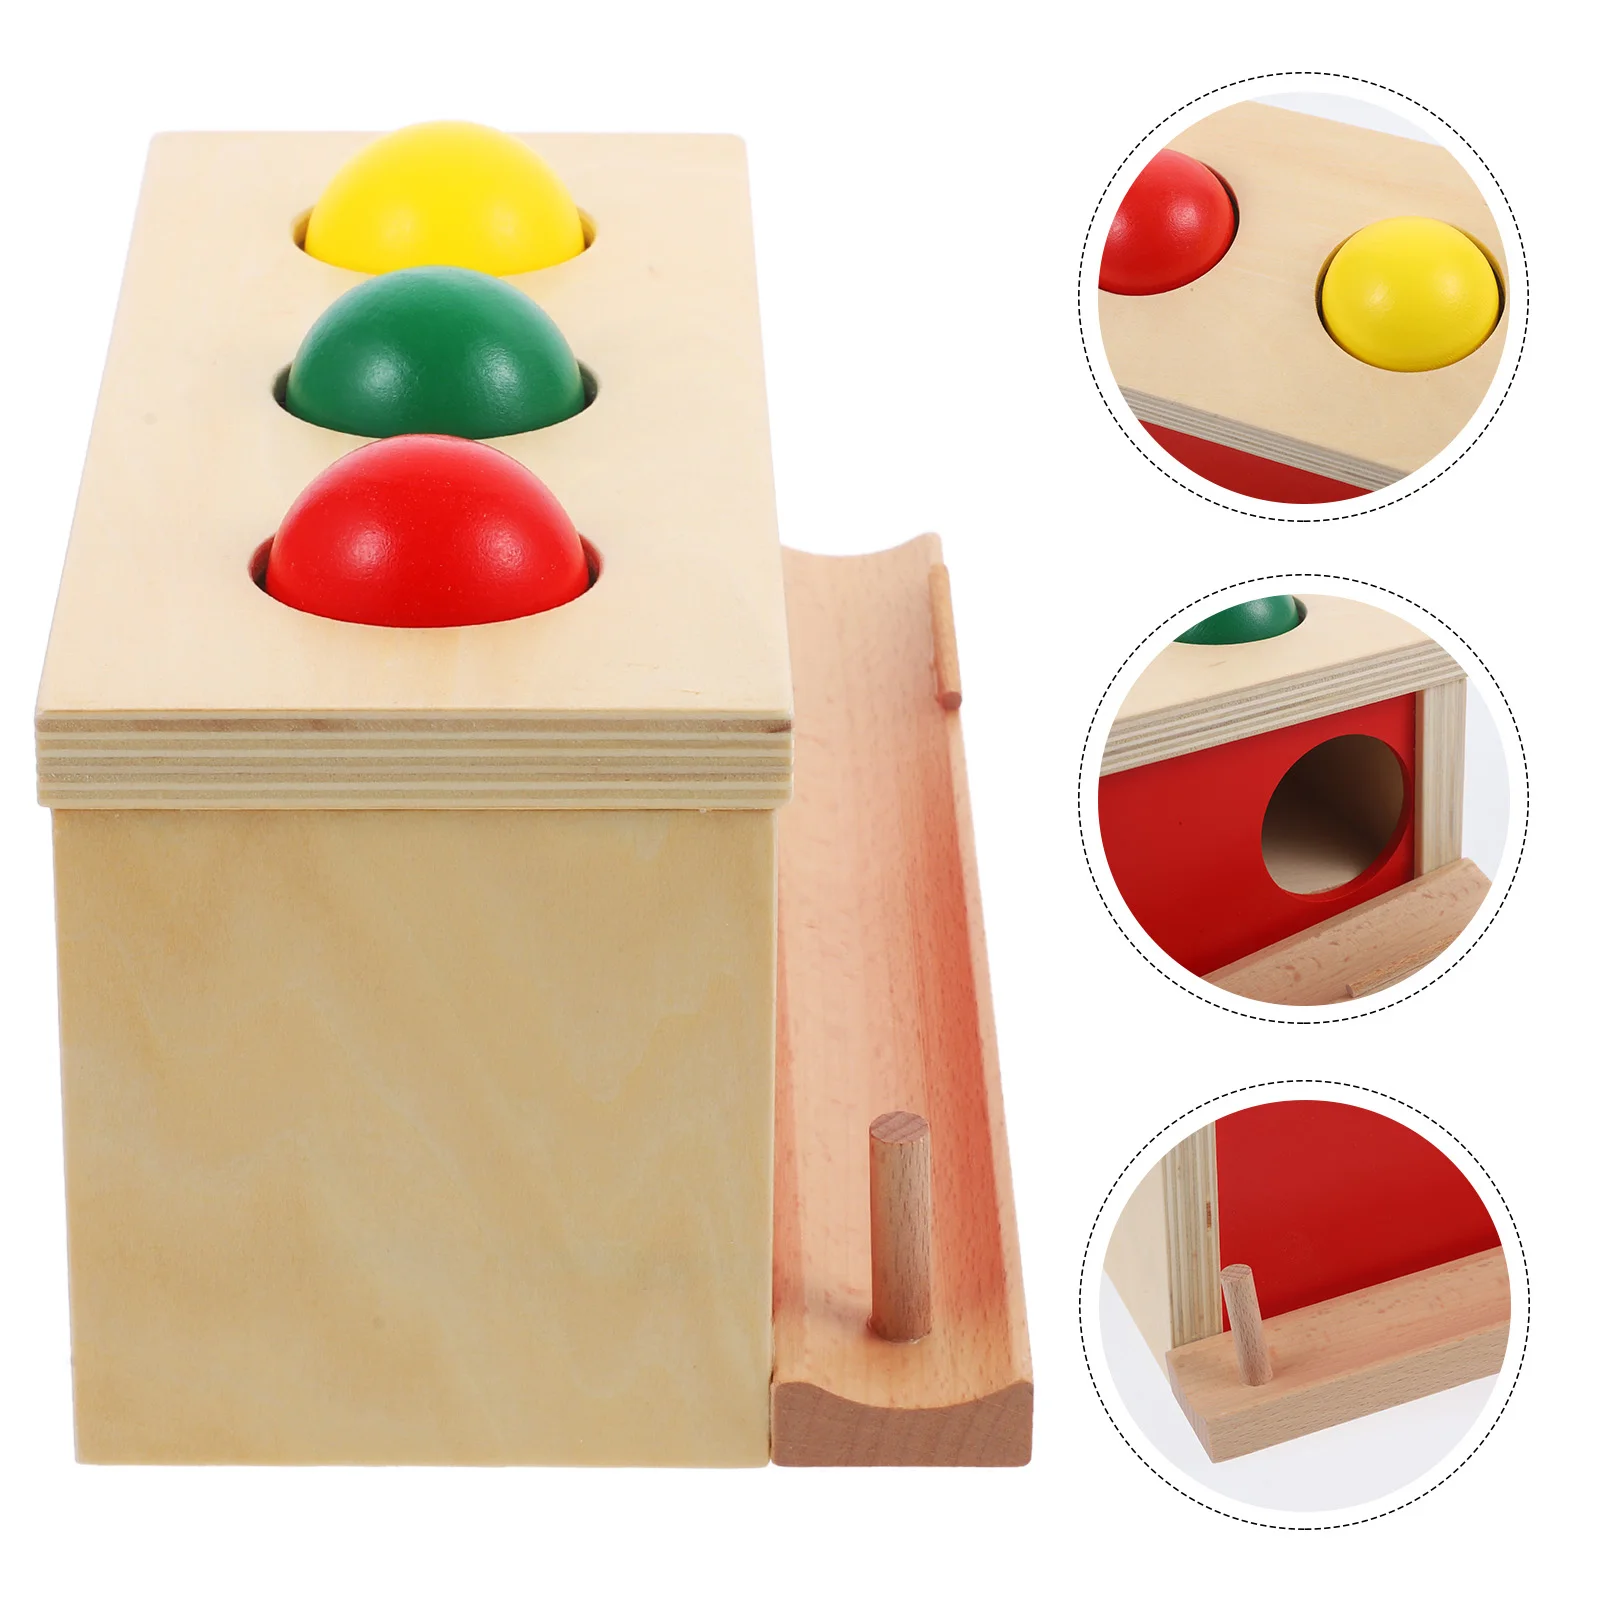 

Деревянные предметы Монтессори, постоянная коробка, ударный шар, игрушки-капельки, шар для монет, текстильный барабан, ящик, коробка, обучающие игрушки